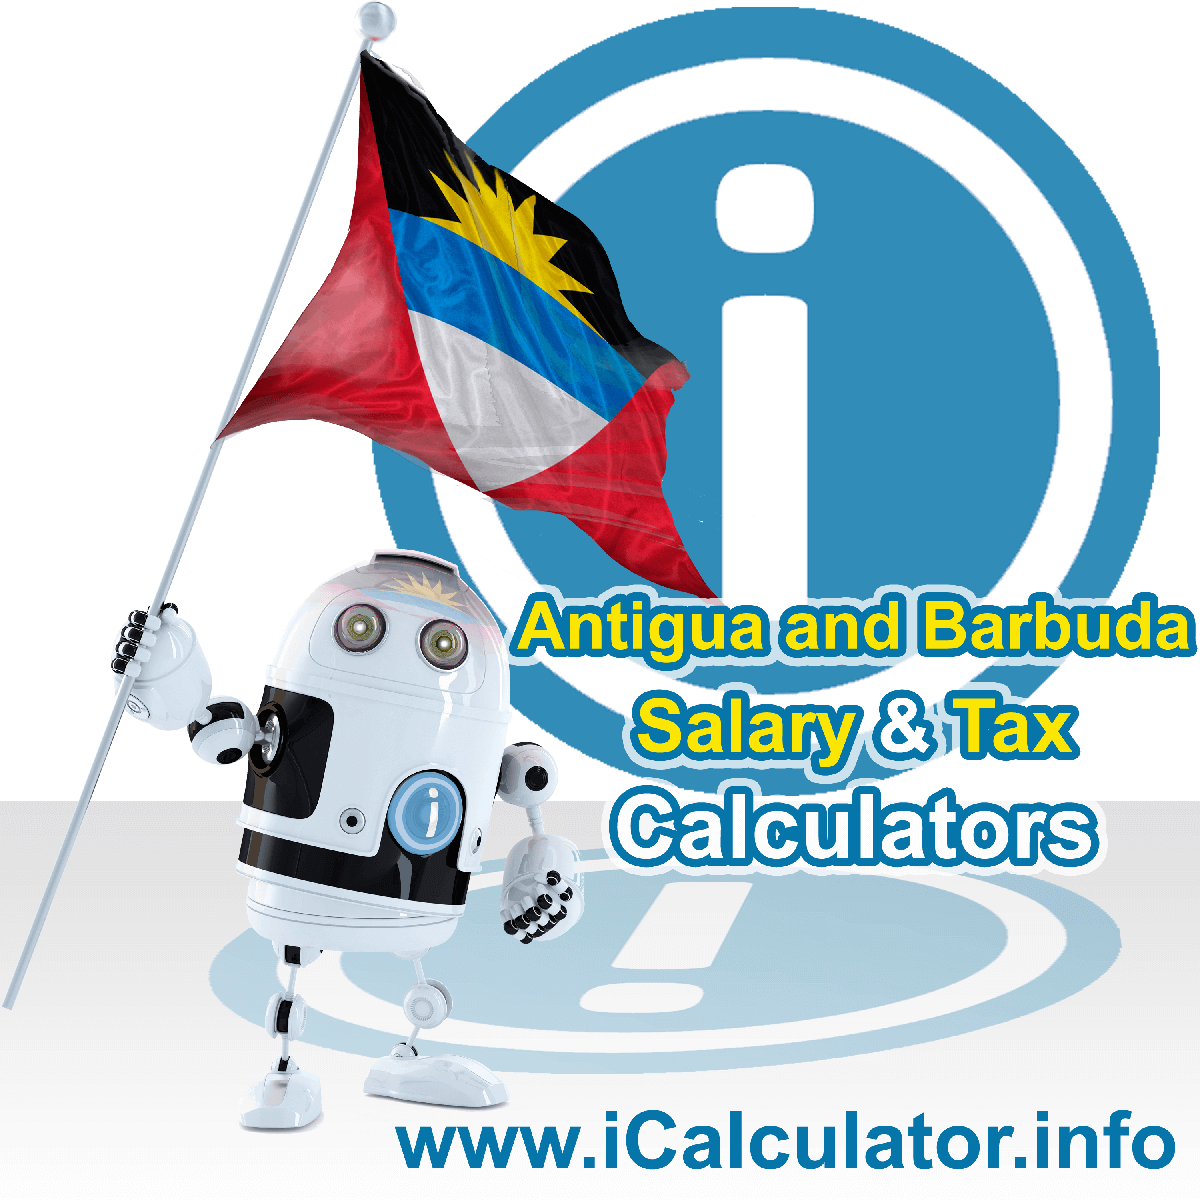 Antigua and Barbuda Tax Calculator. This image shows the Antigua and Barbuda flag and information relating to the tax formula for the Antigua and Barbuda Salary Calculator